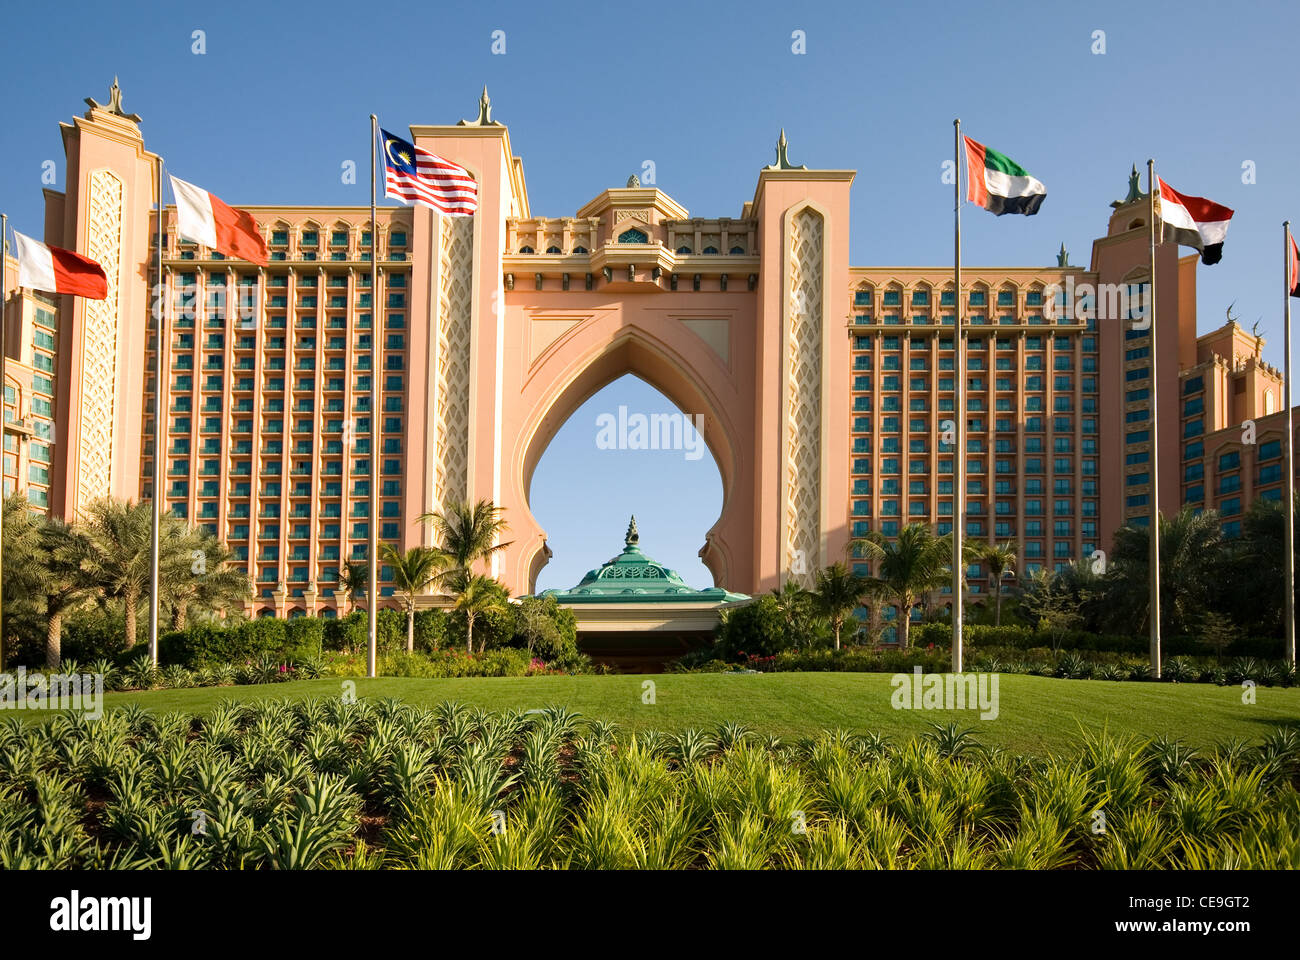 A luxury hotel, Dubai, United Arab Emirates Stock Photo